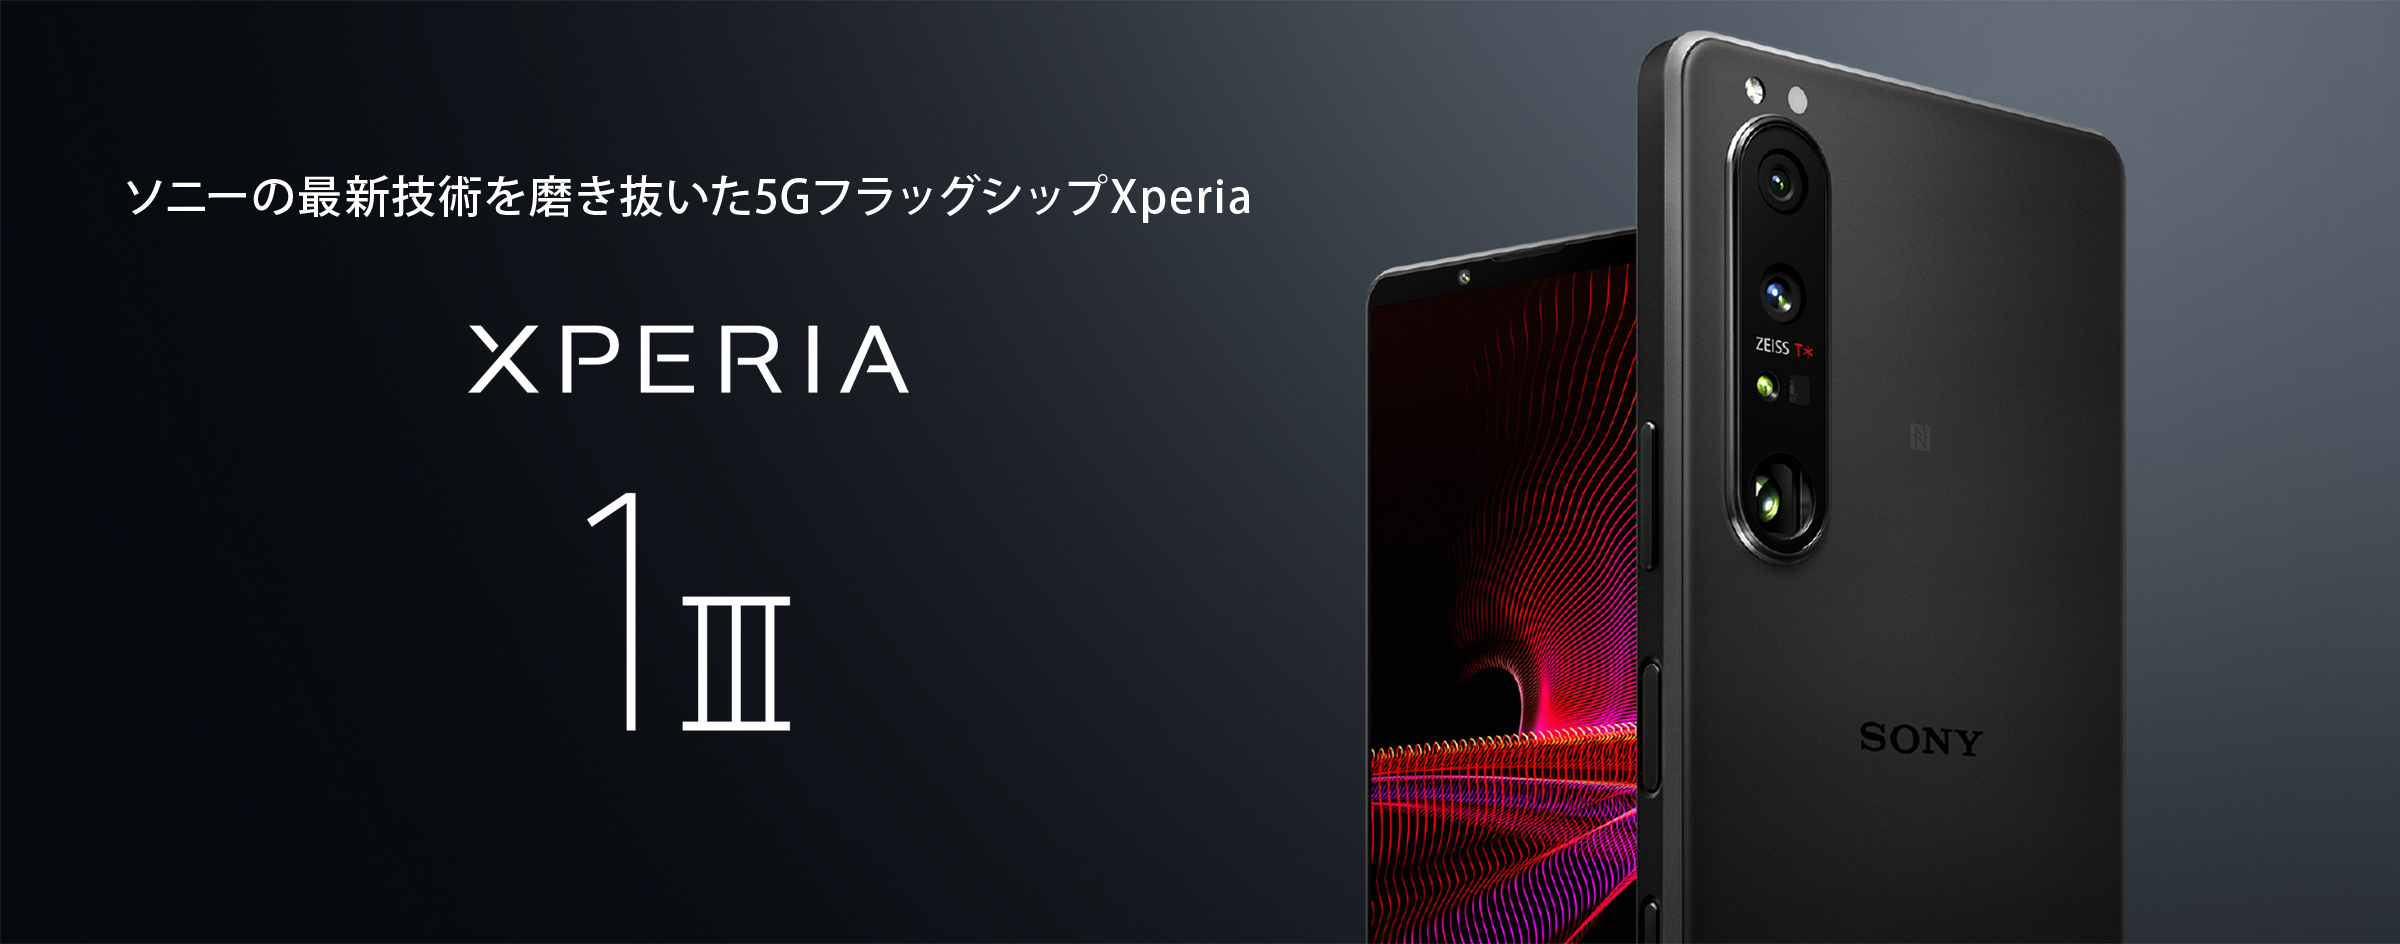 Xperia 1 III | Xperia公式サイト